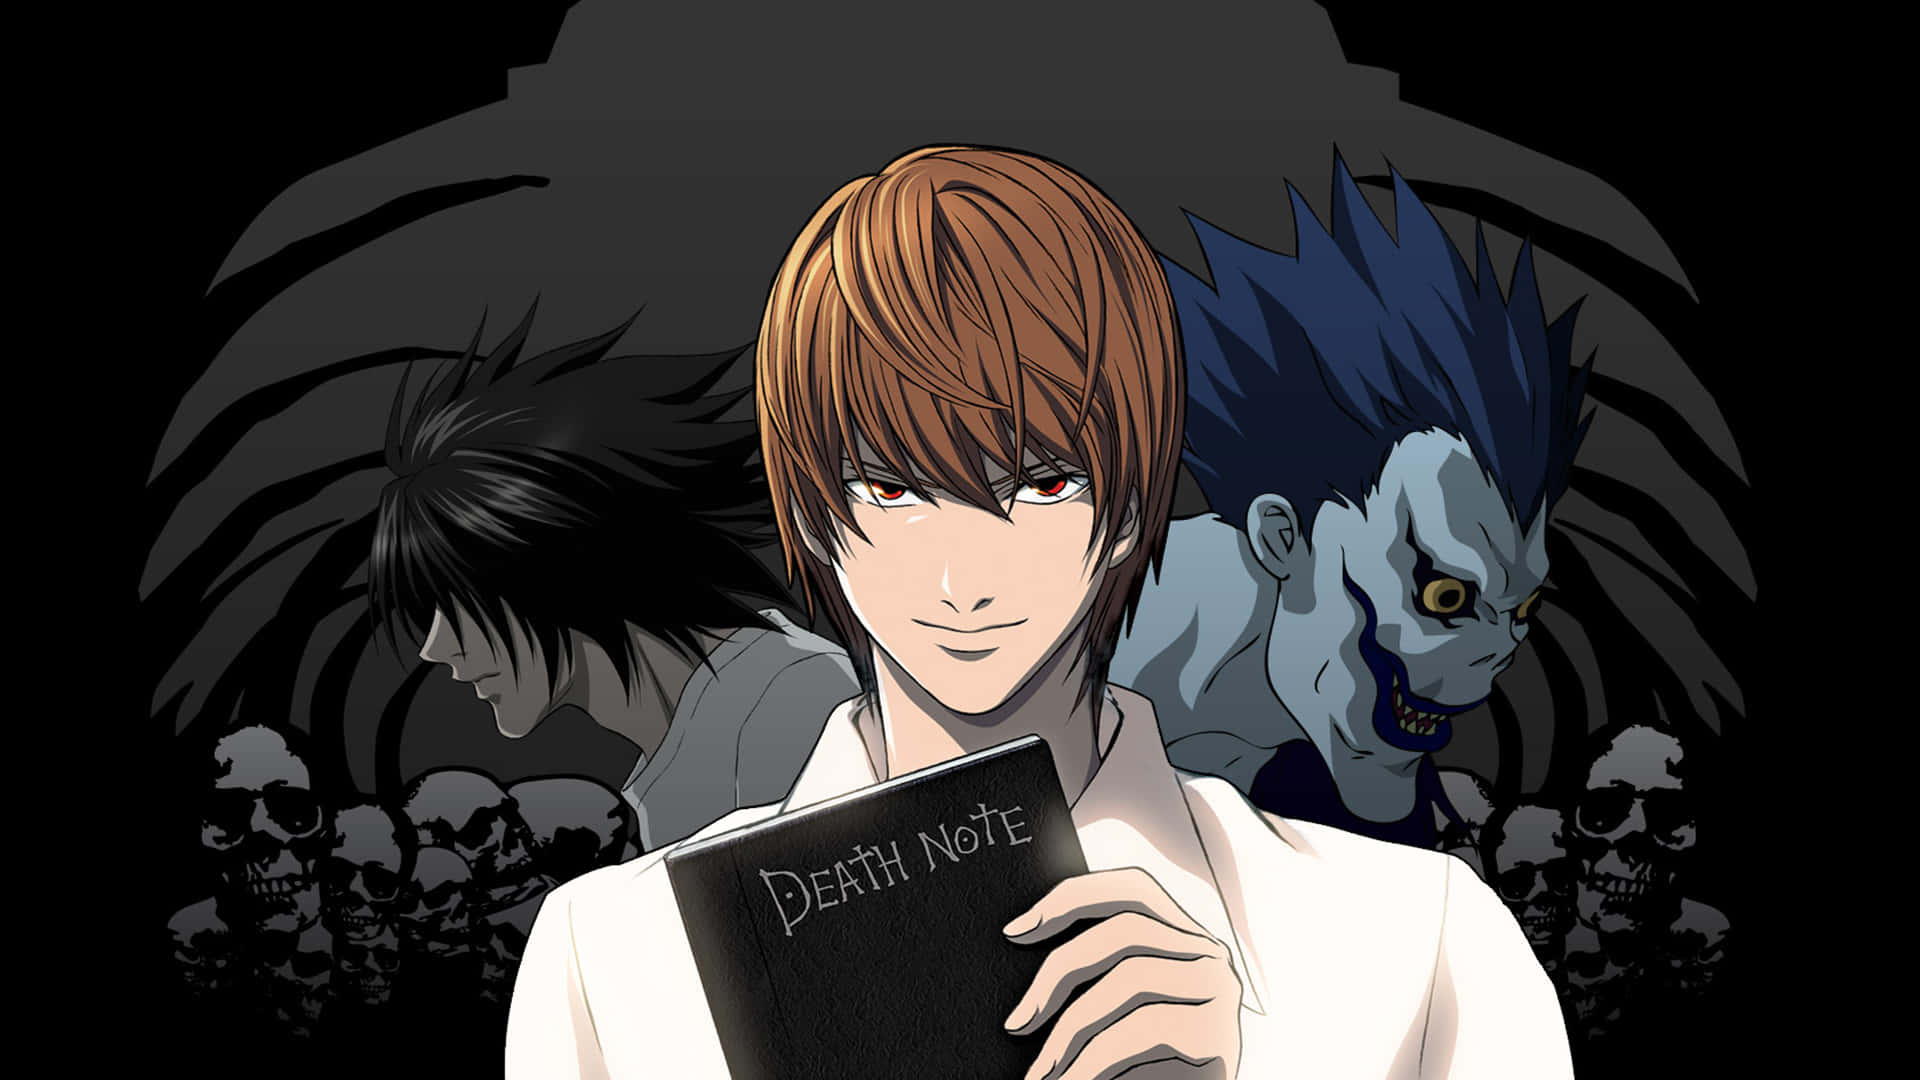 Entdeckedie Geheimnisse Hinter Dem Death Note